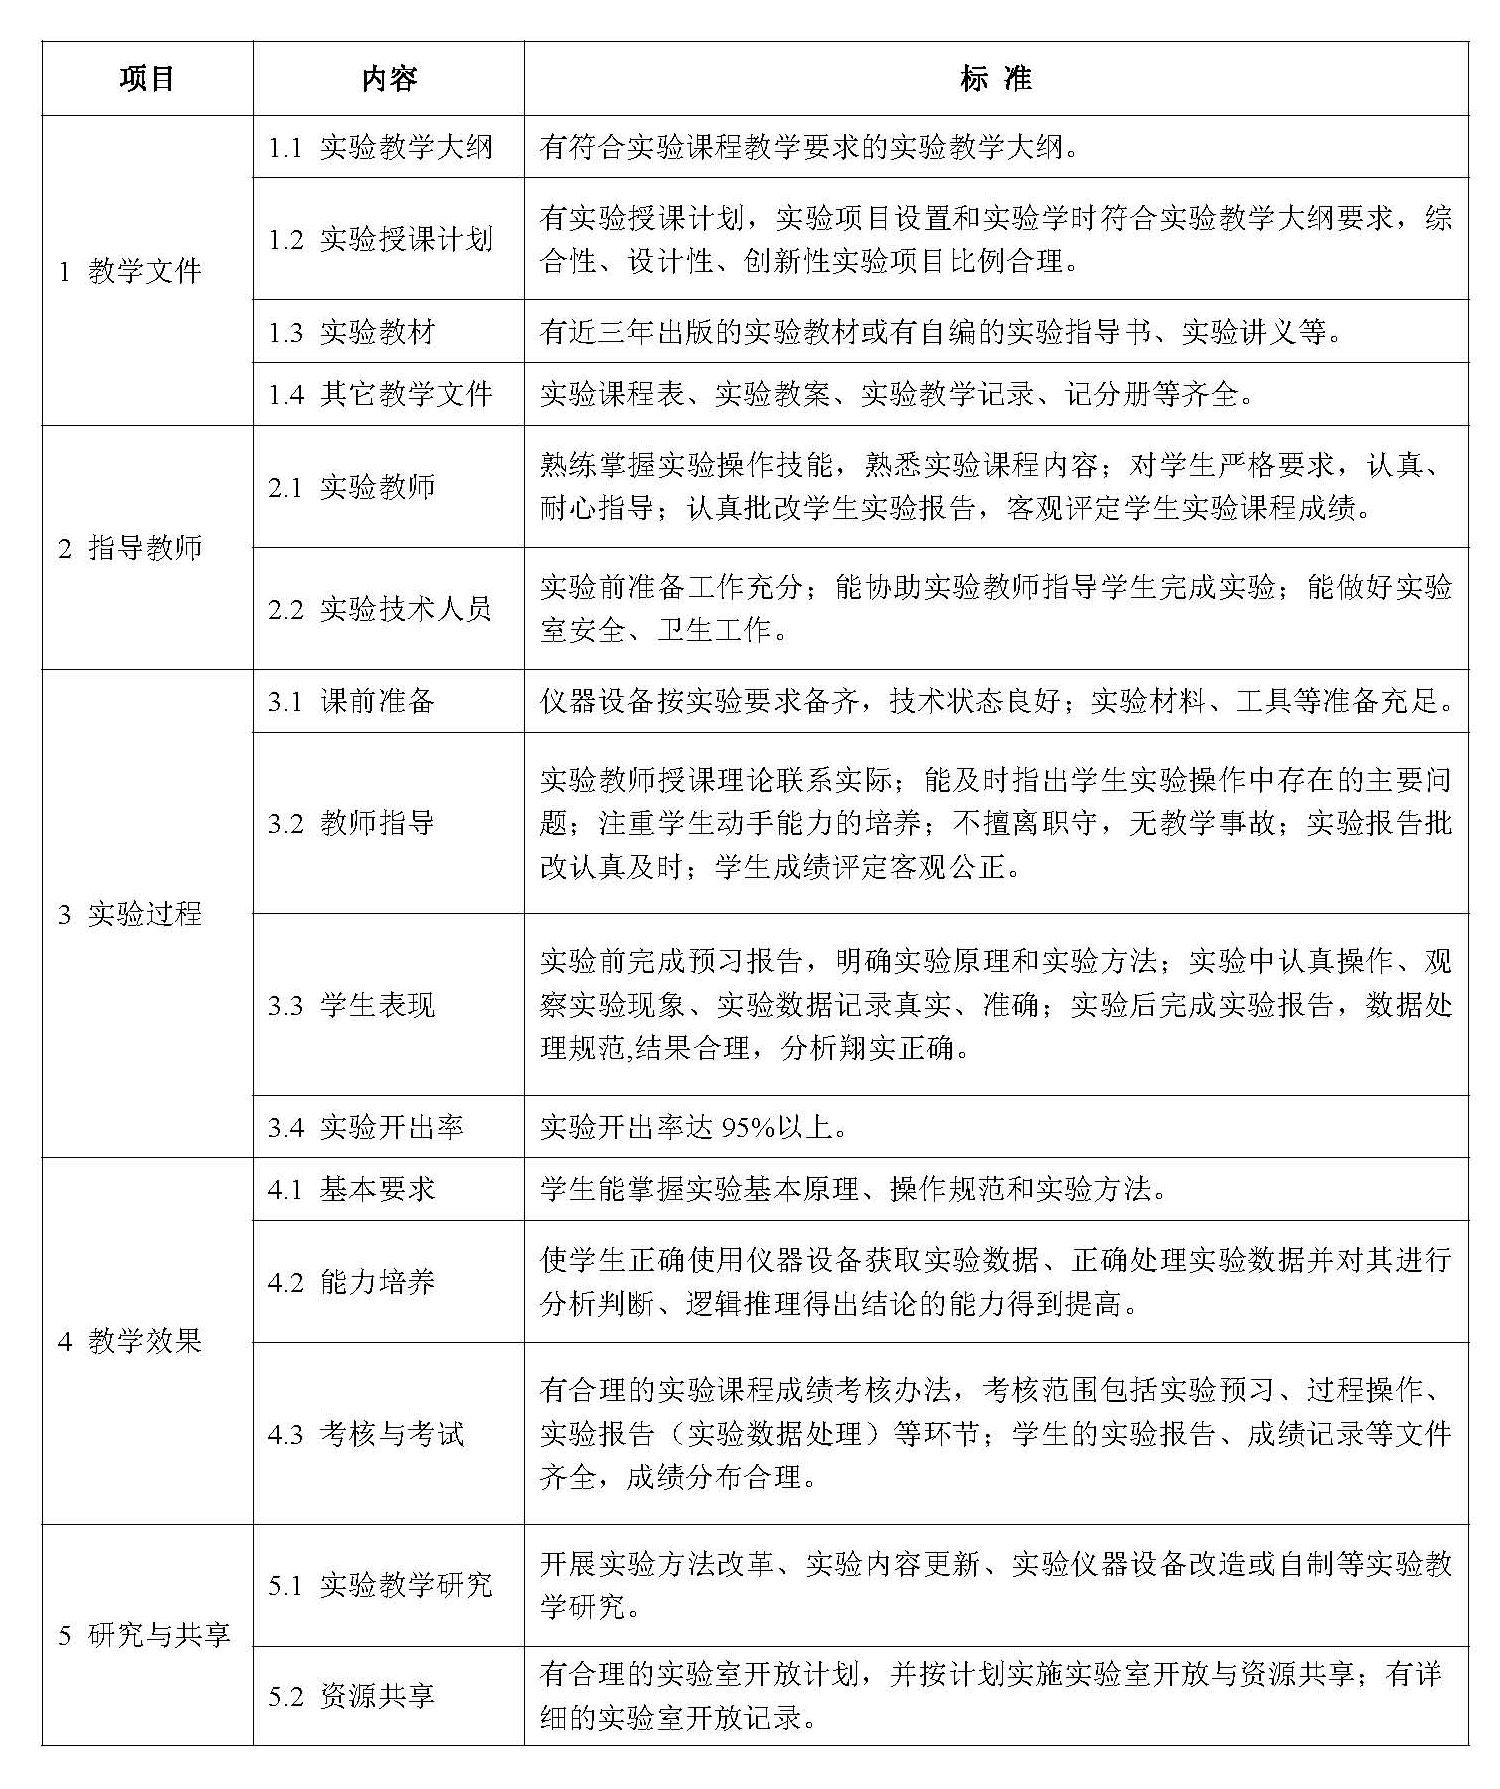 哈尔滨商业大学实验课程质量标准（修订）-1.jpg